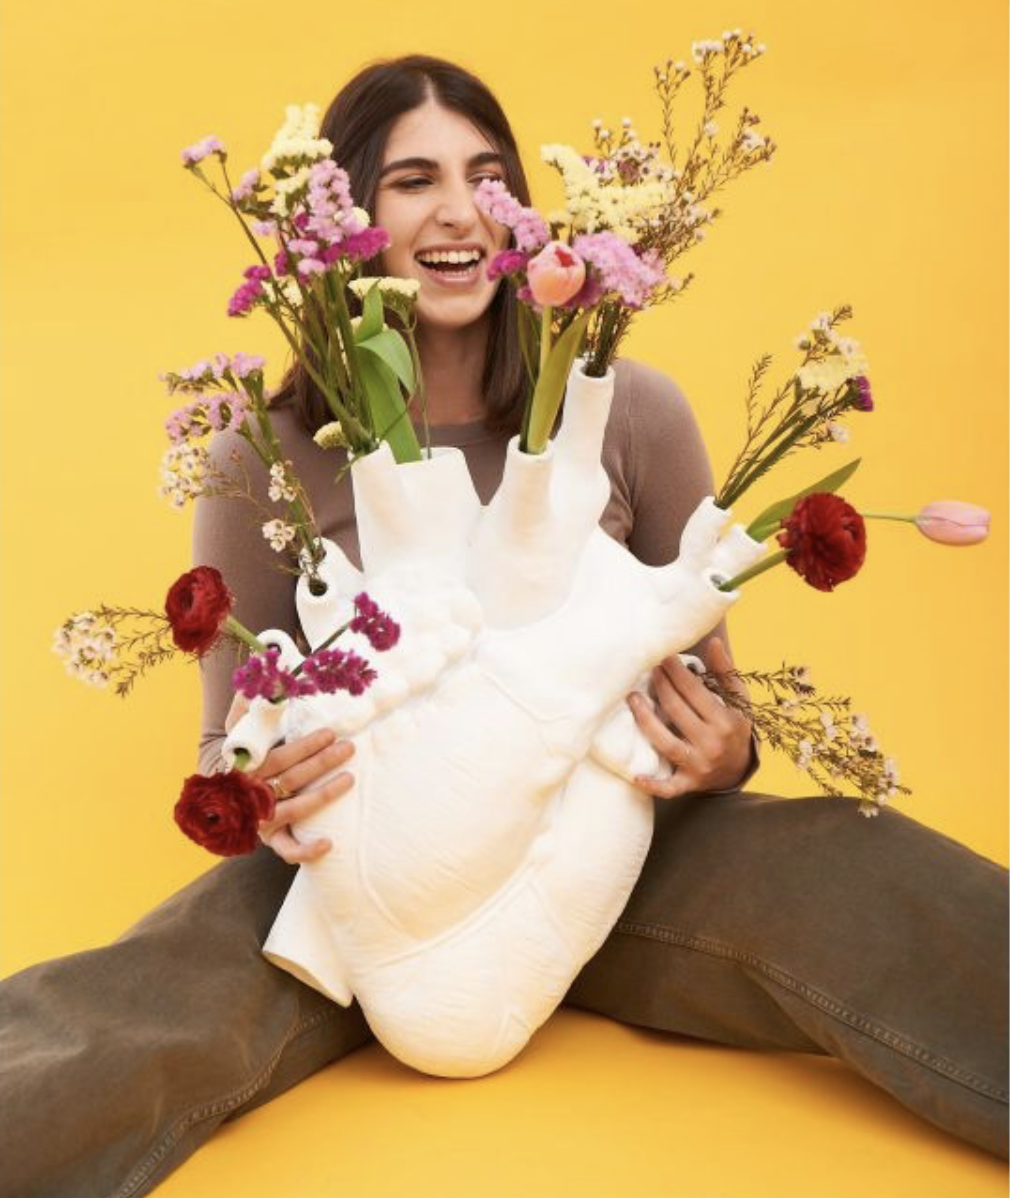 Love In Bloom Vase - Giant